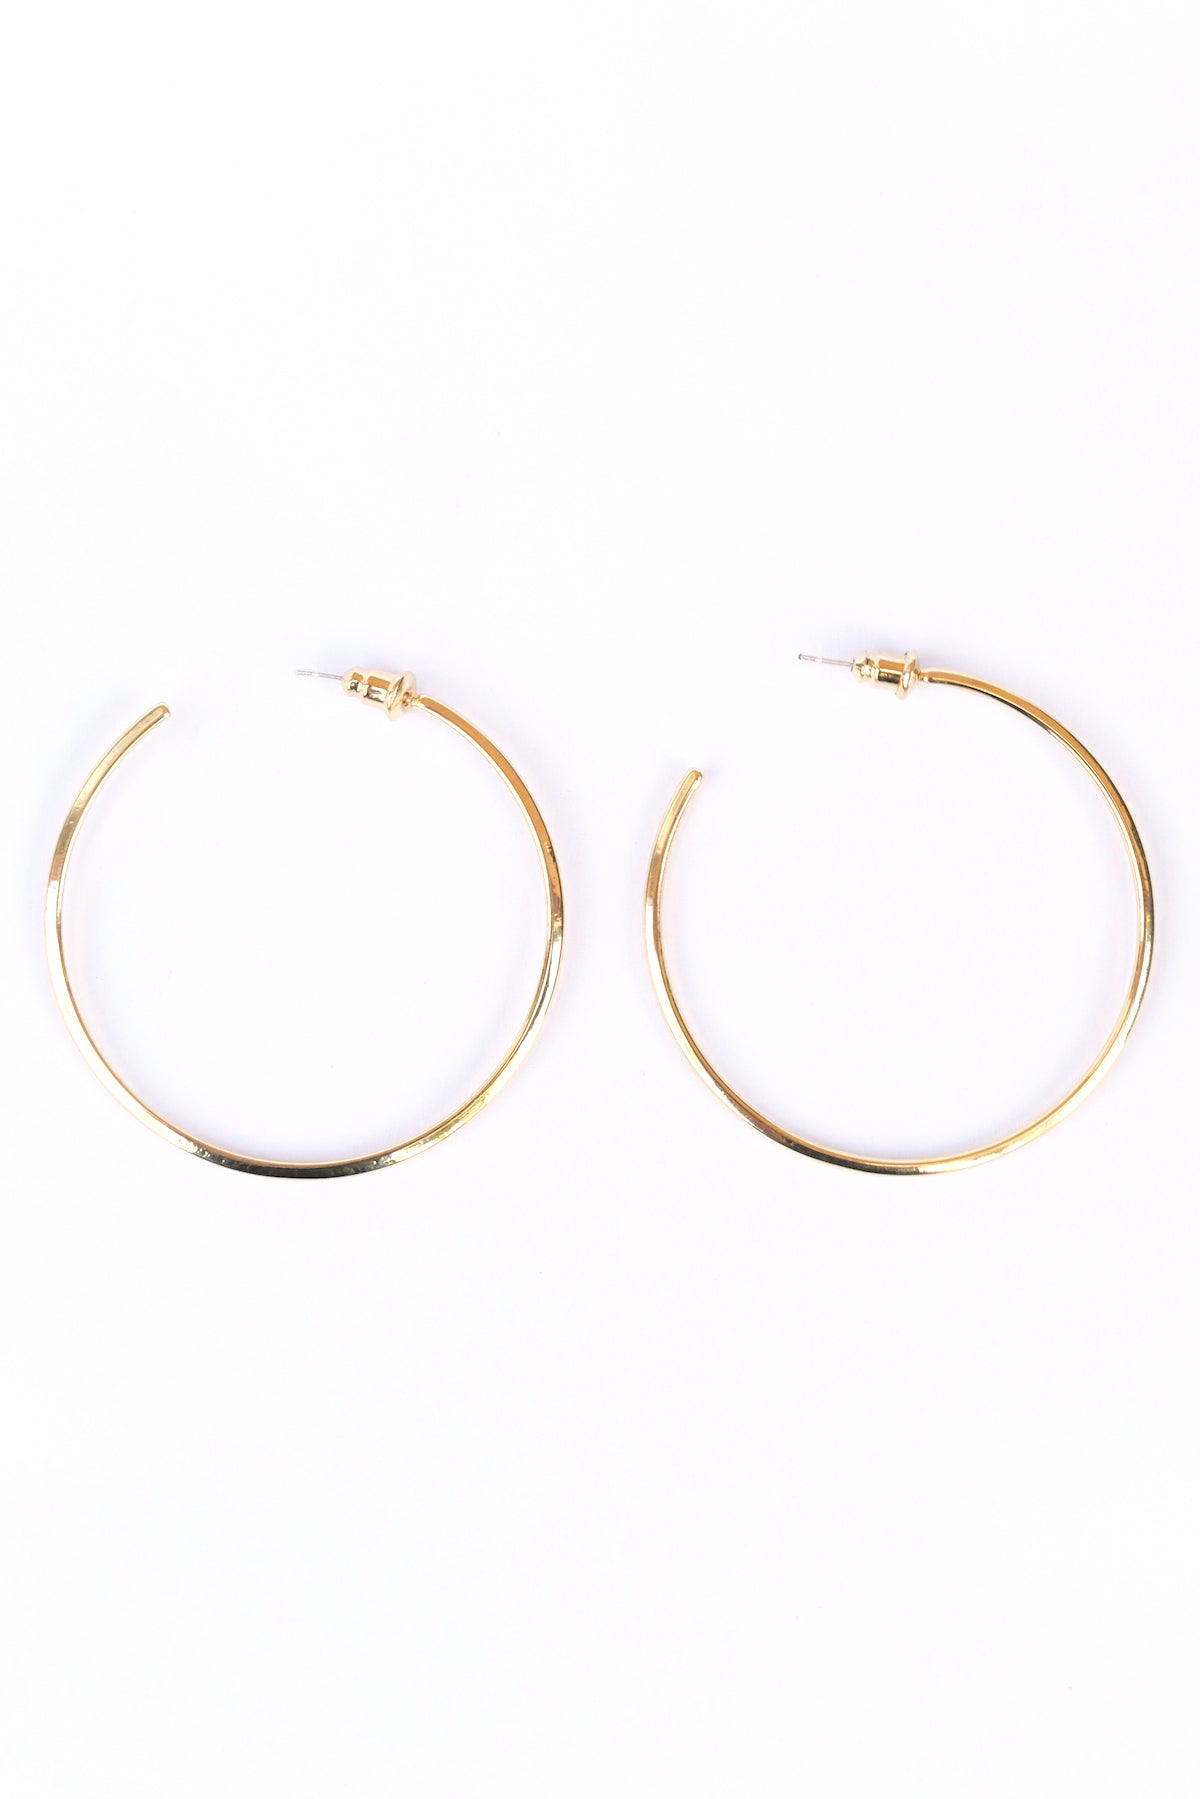 Gold Modern hoop earrings on a white backdrop